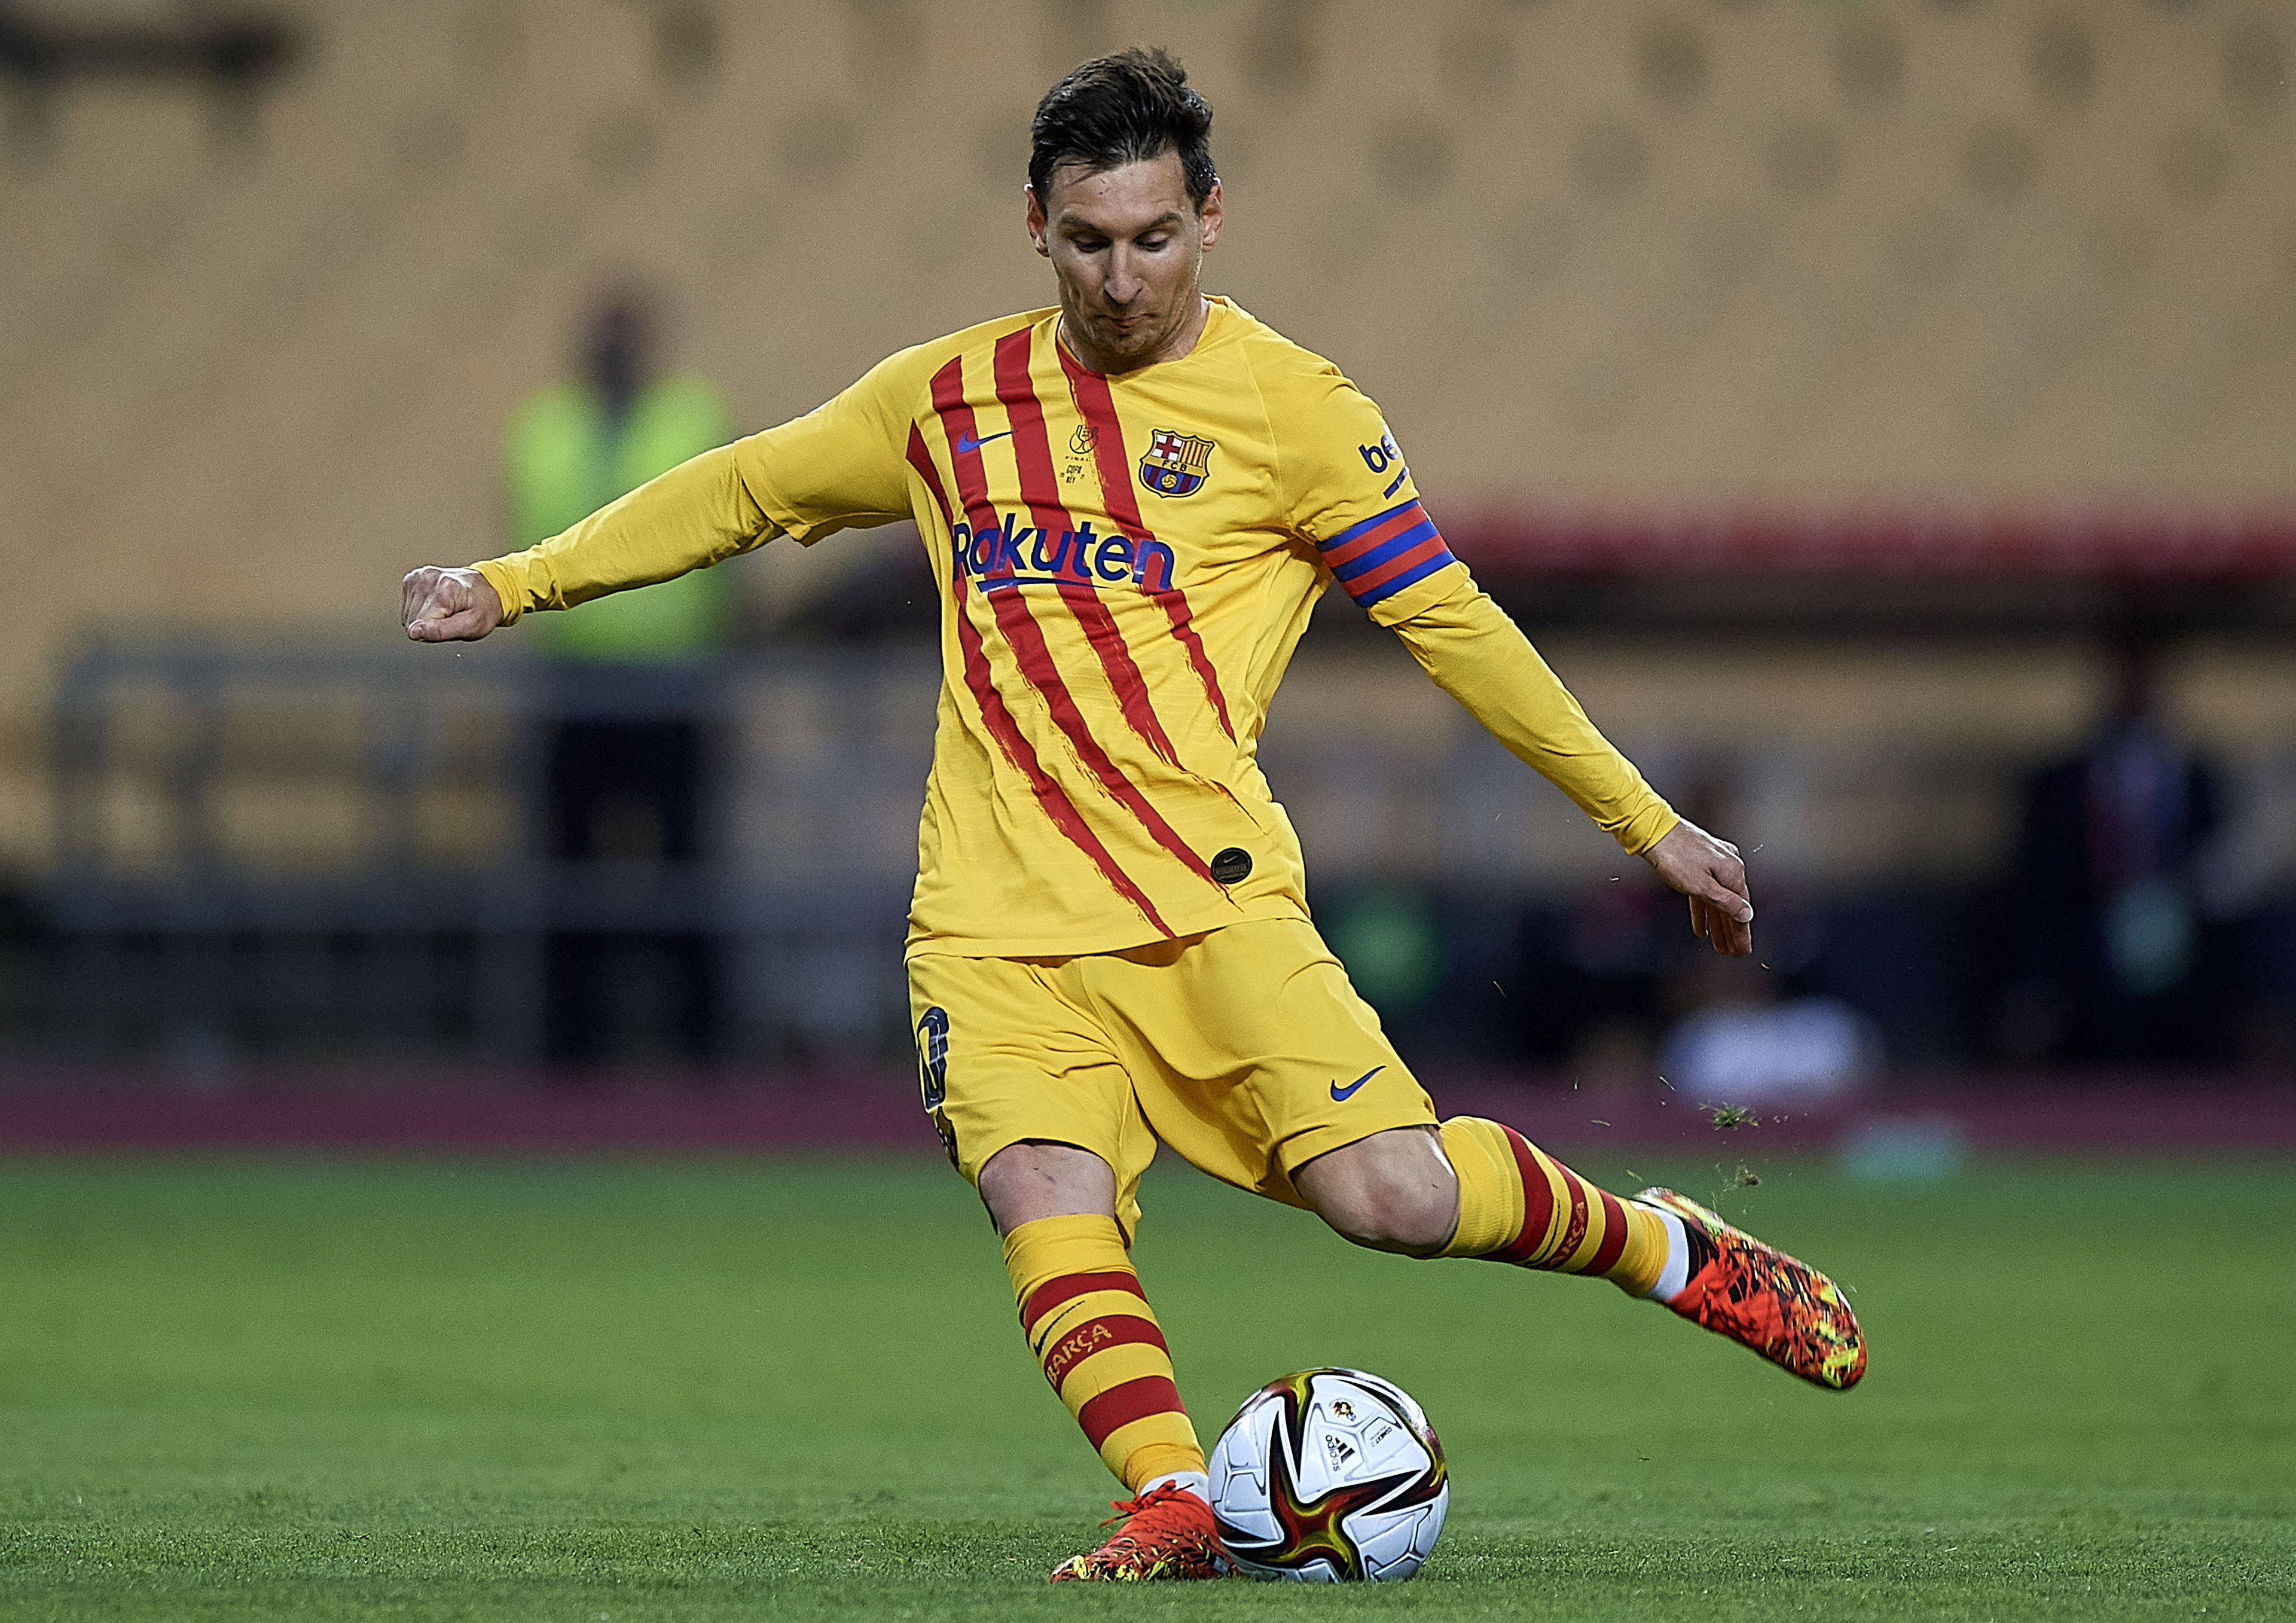 Ingyen sem maradhatott volna Messi az FC Barcelonánál / Fotó: Northfoto